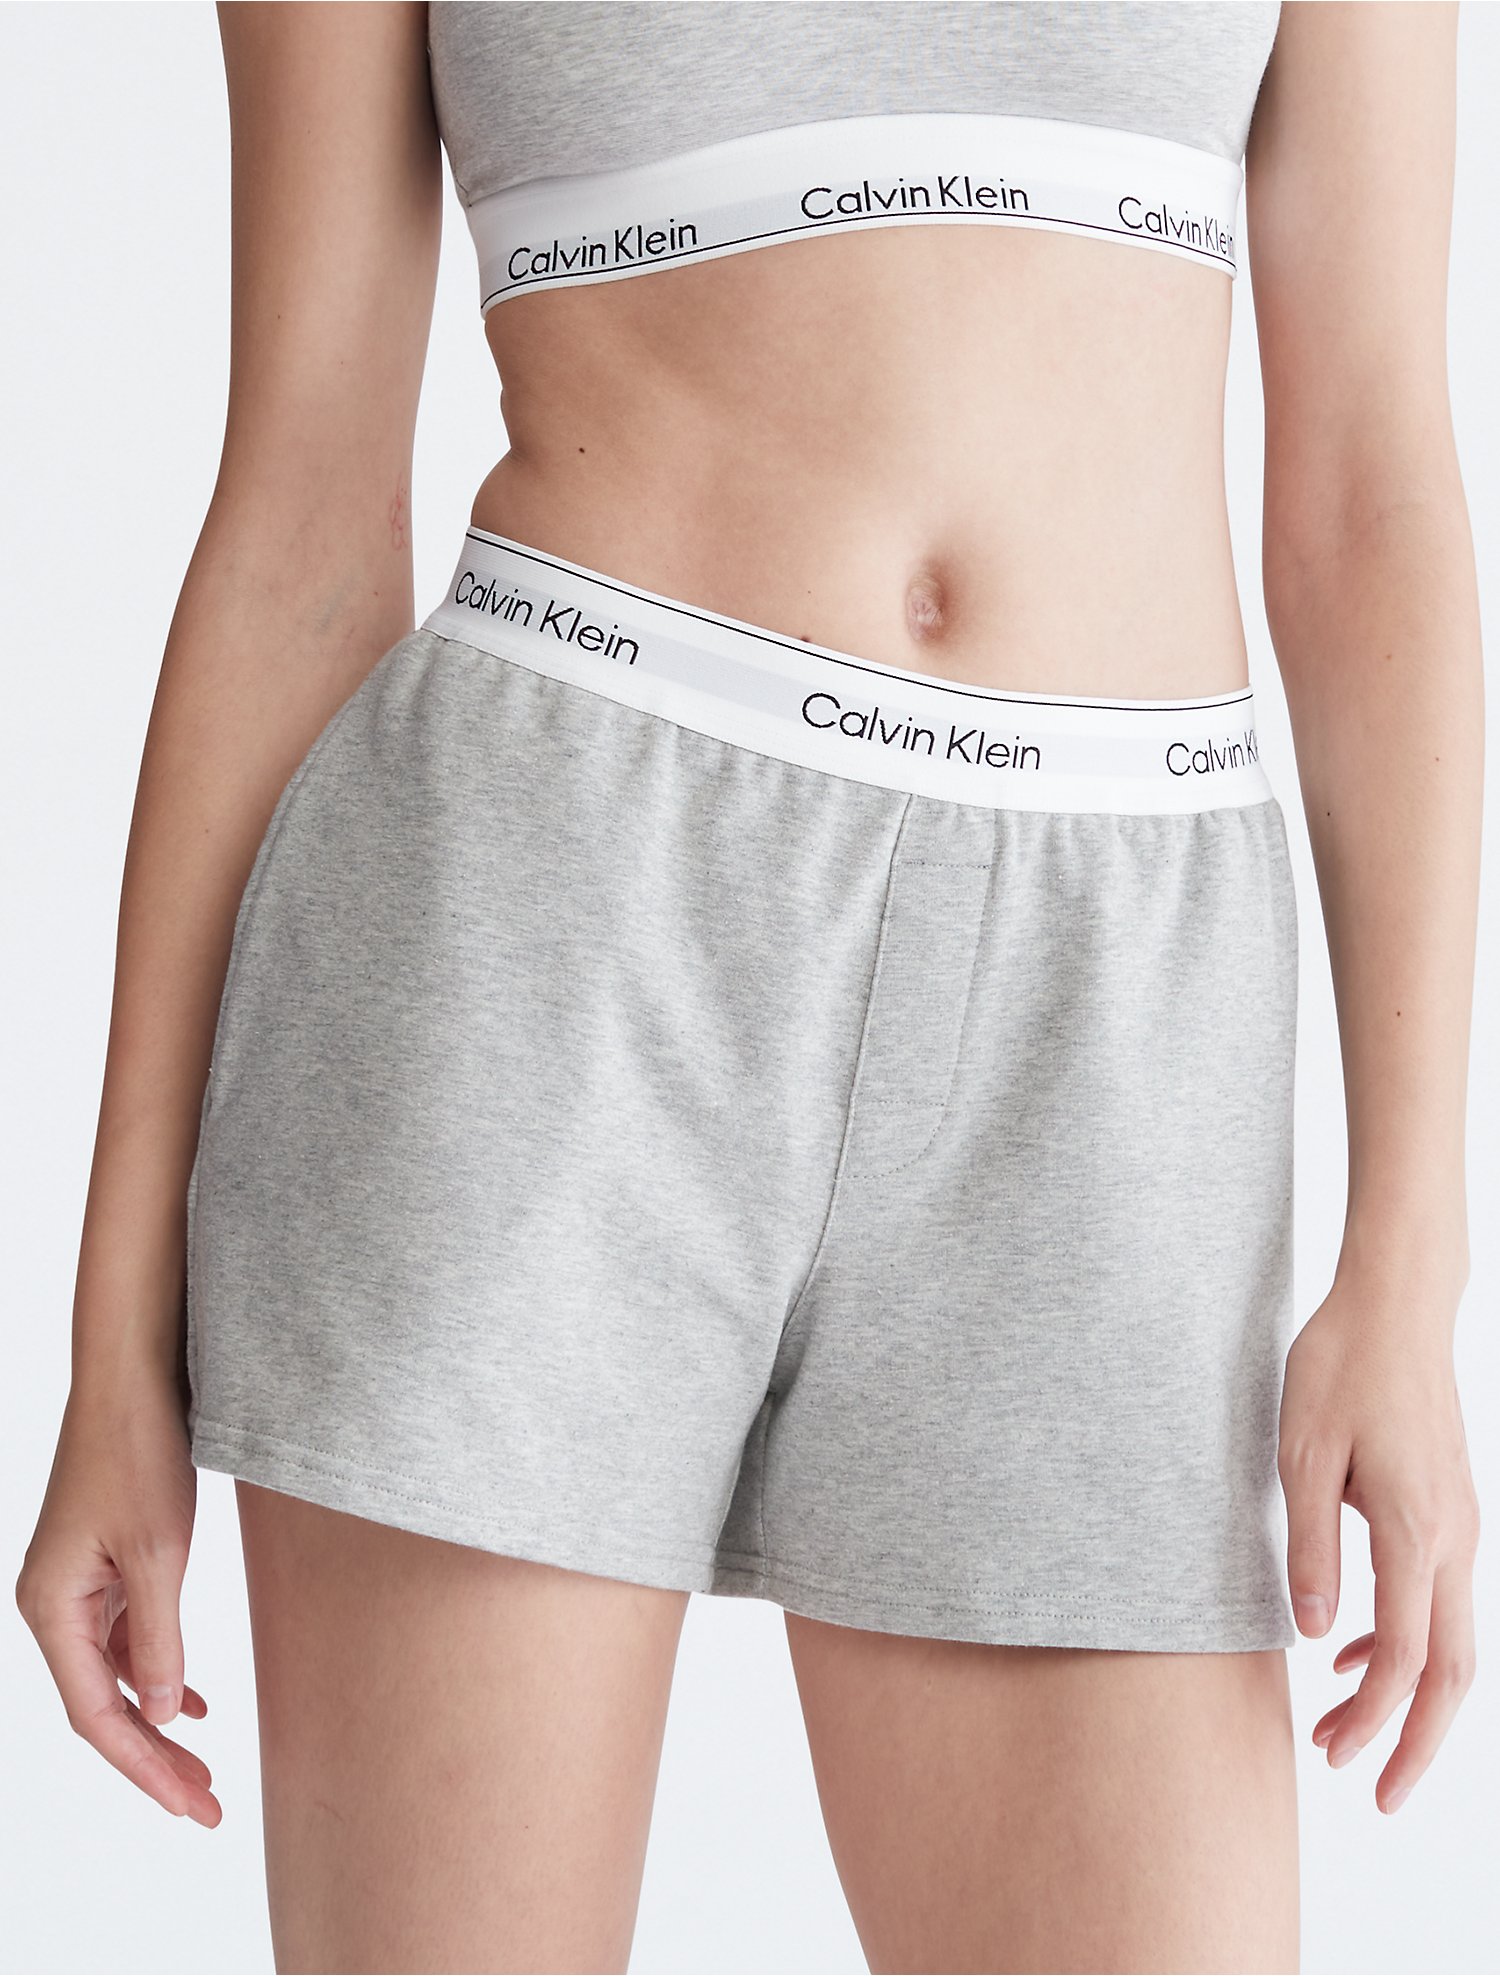 Introducir 66+ imagen calvin klein modern cotton sleep shorts